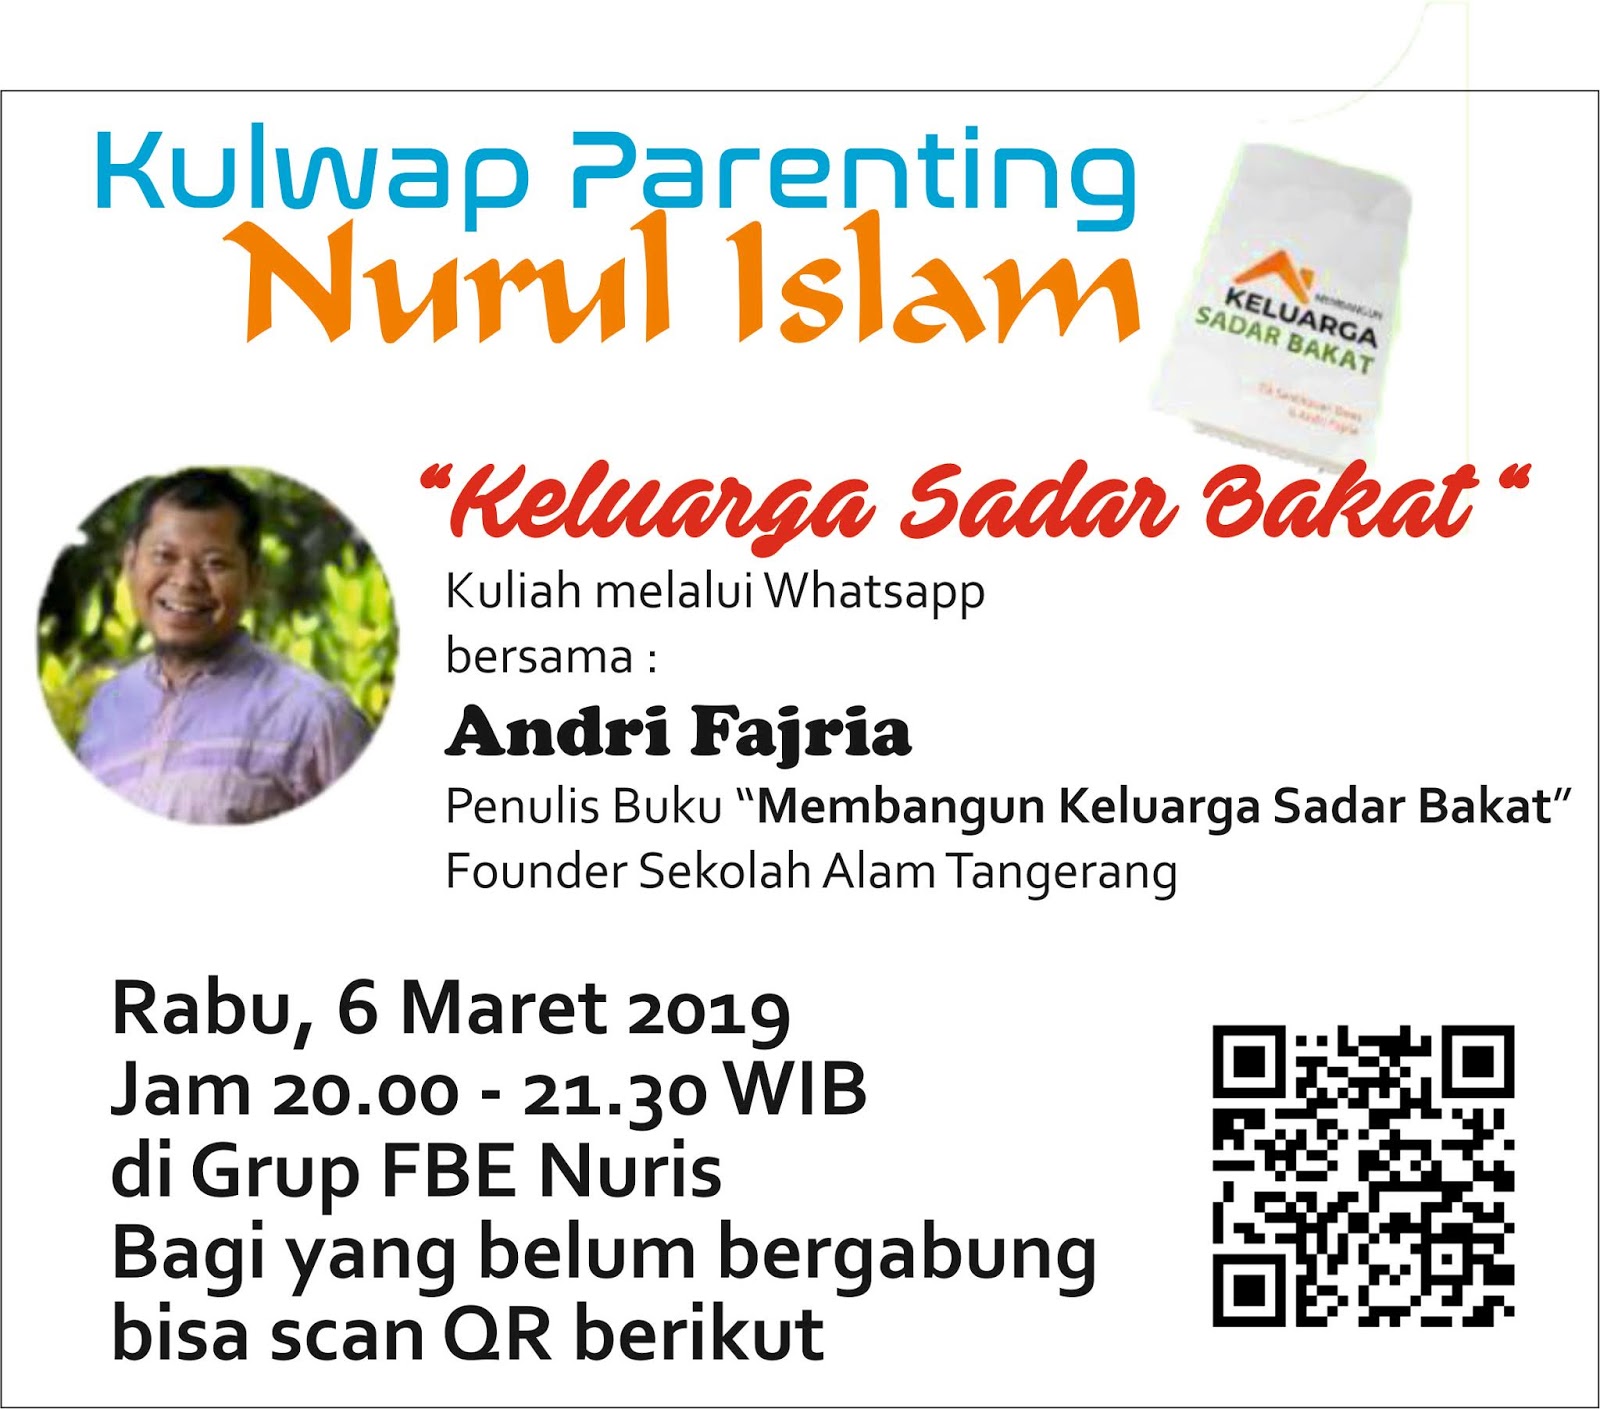 Berikut adalah resume Kuliah line di forum Parenting SDIT Alam Nurul Islam bersama Pak Andri Fajria Beliau adalah penulis buku “Membangun Keluarga Sadar